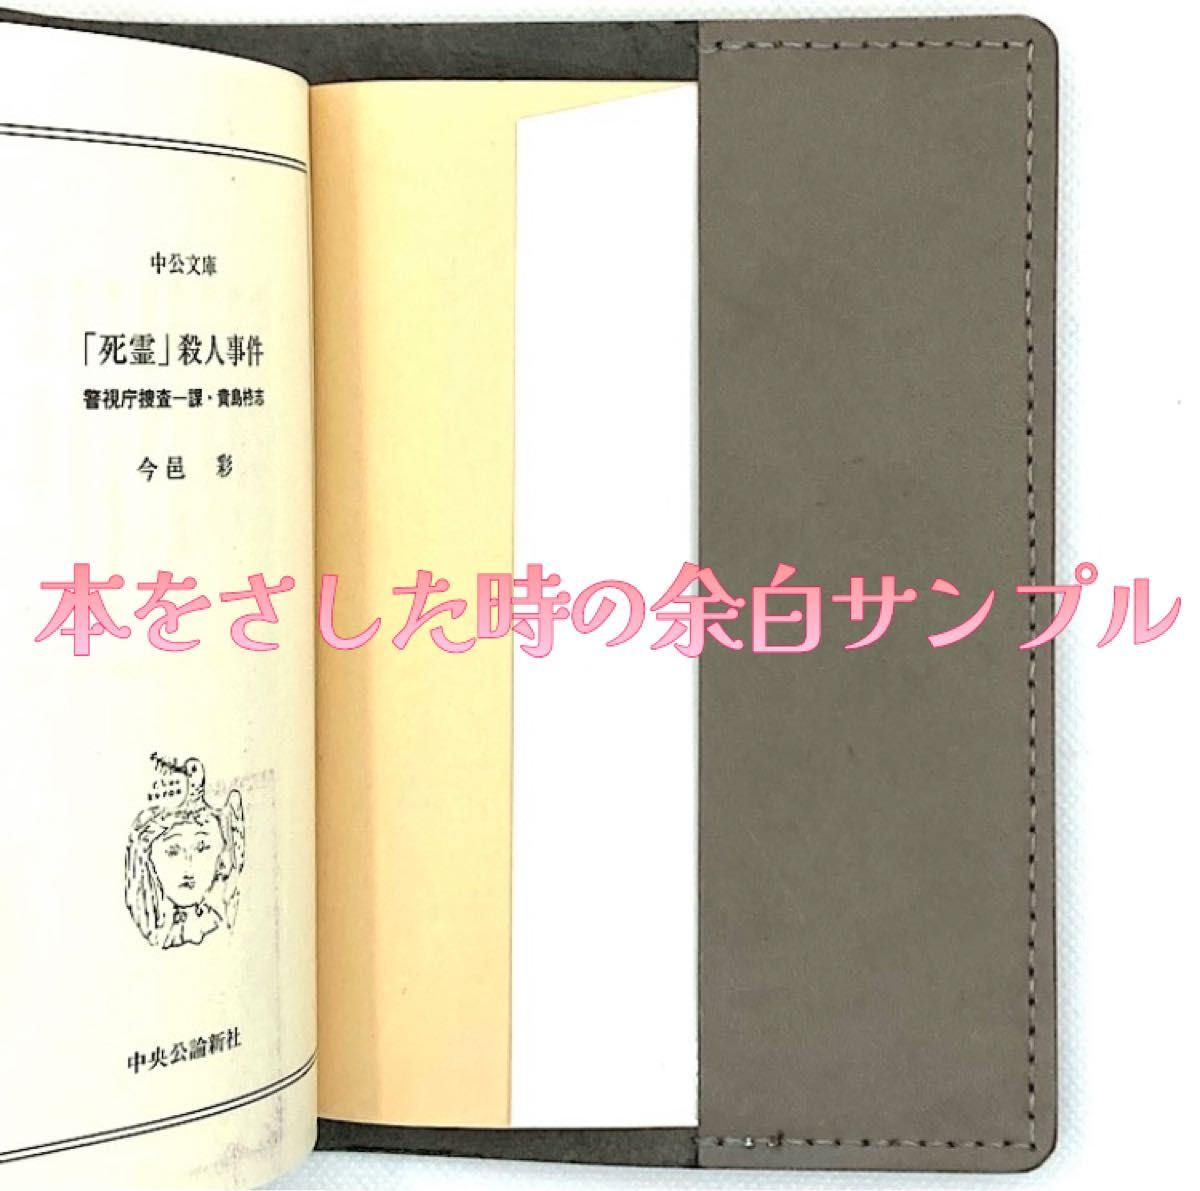 2【ハンドメイド】姫路レザー 本革 文庫用ブックカバー